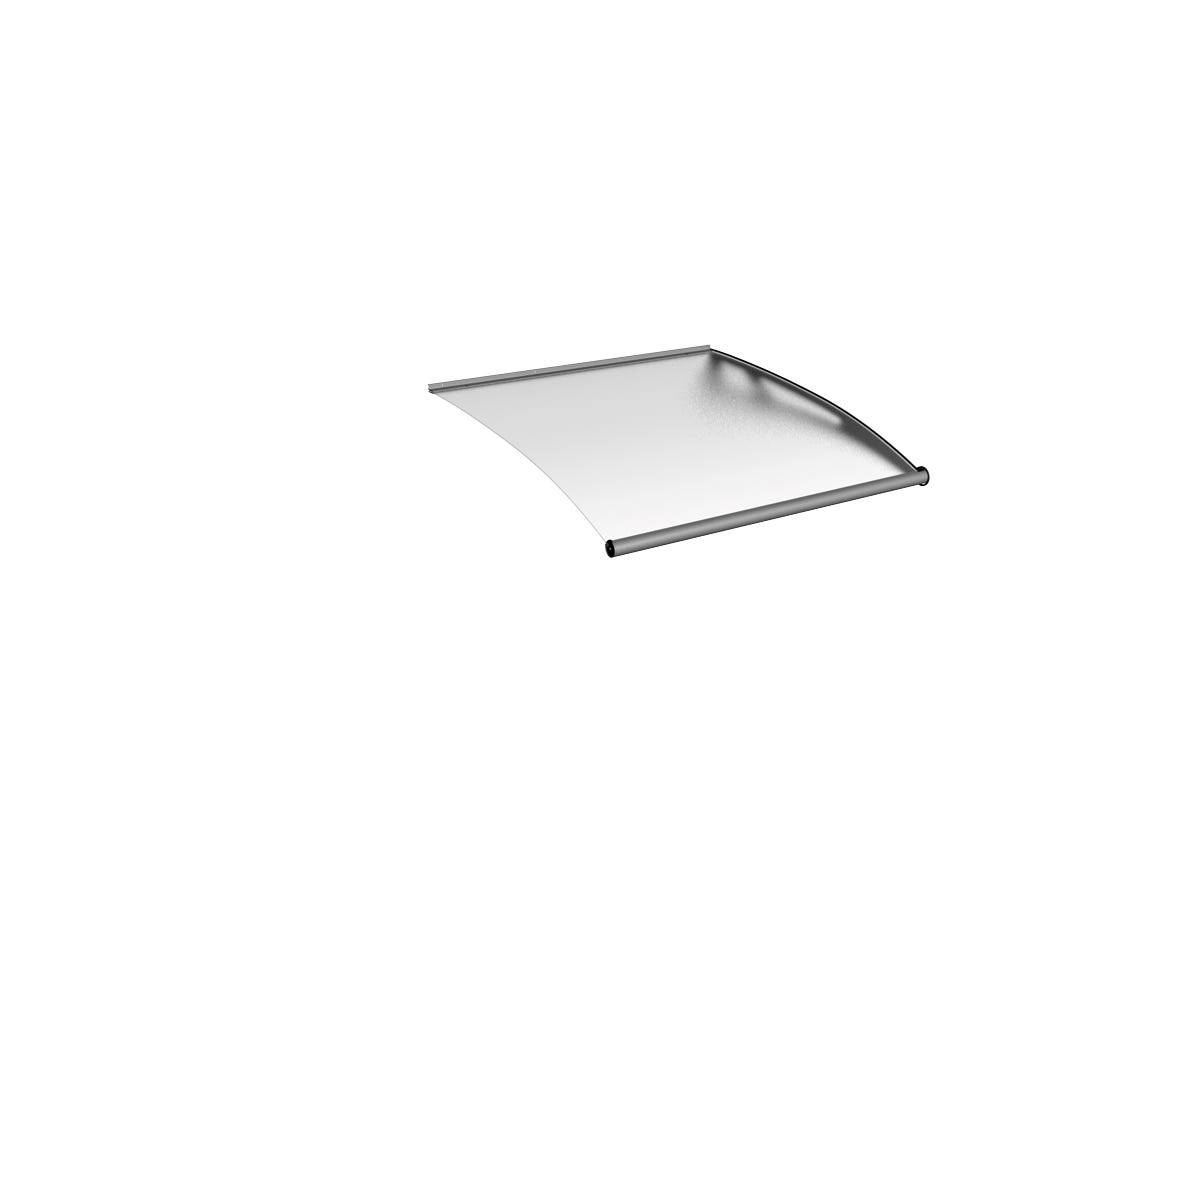 Schulte marquise auvent de porte, module de base, 287 x 142 cm, verre acrylique transparent, fixation inox brossé mat XL 6